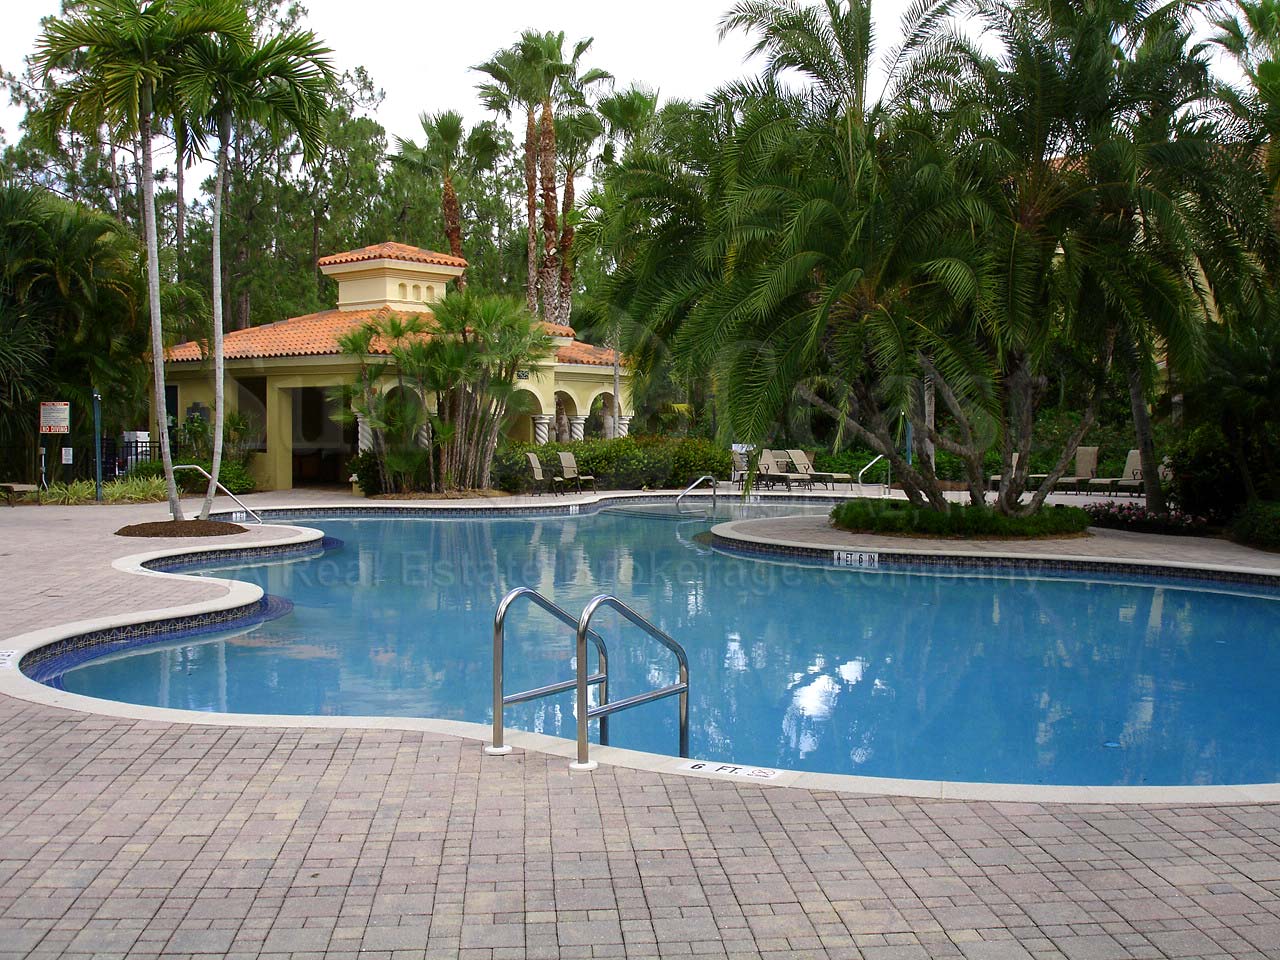 Castillo Community Pool and Cabana